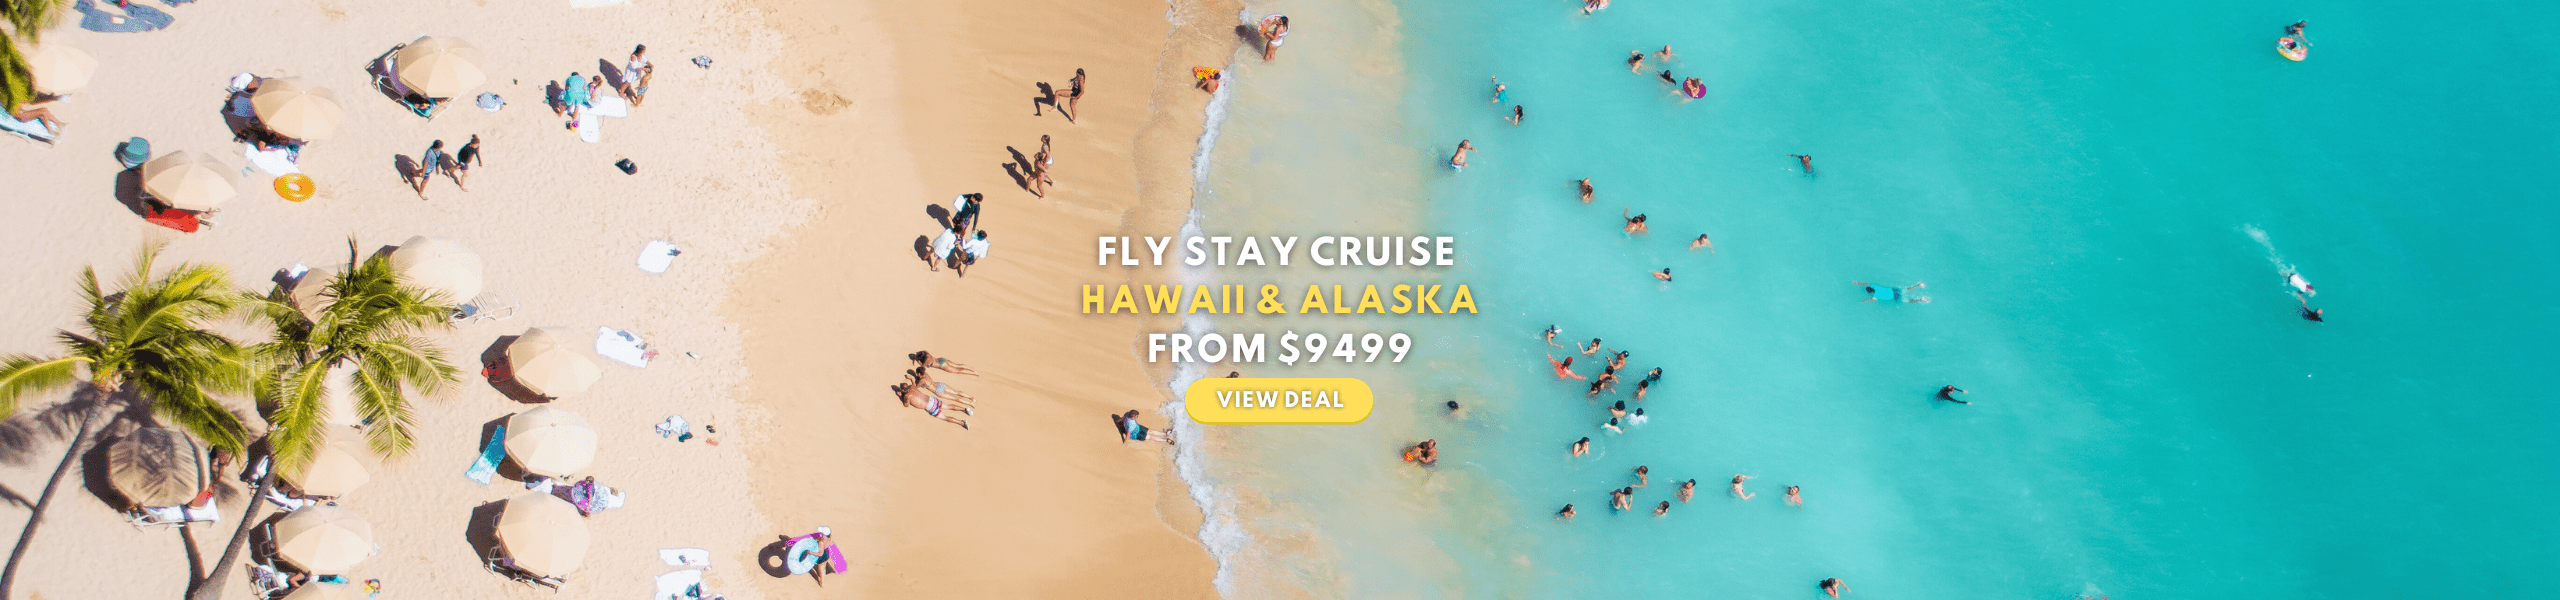 Hawaii & Alaska Cruise With Flights From Australia 